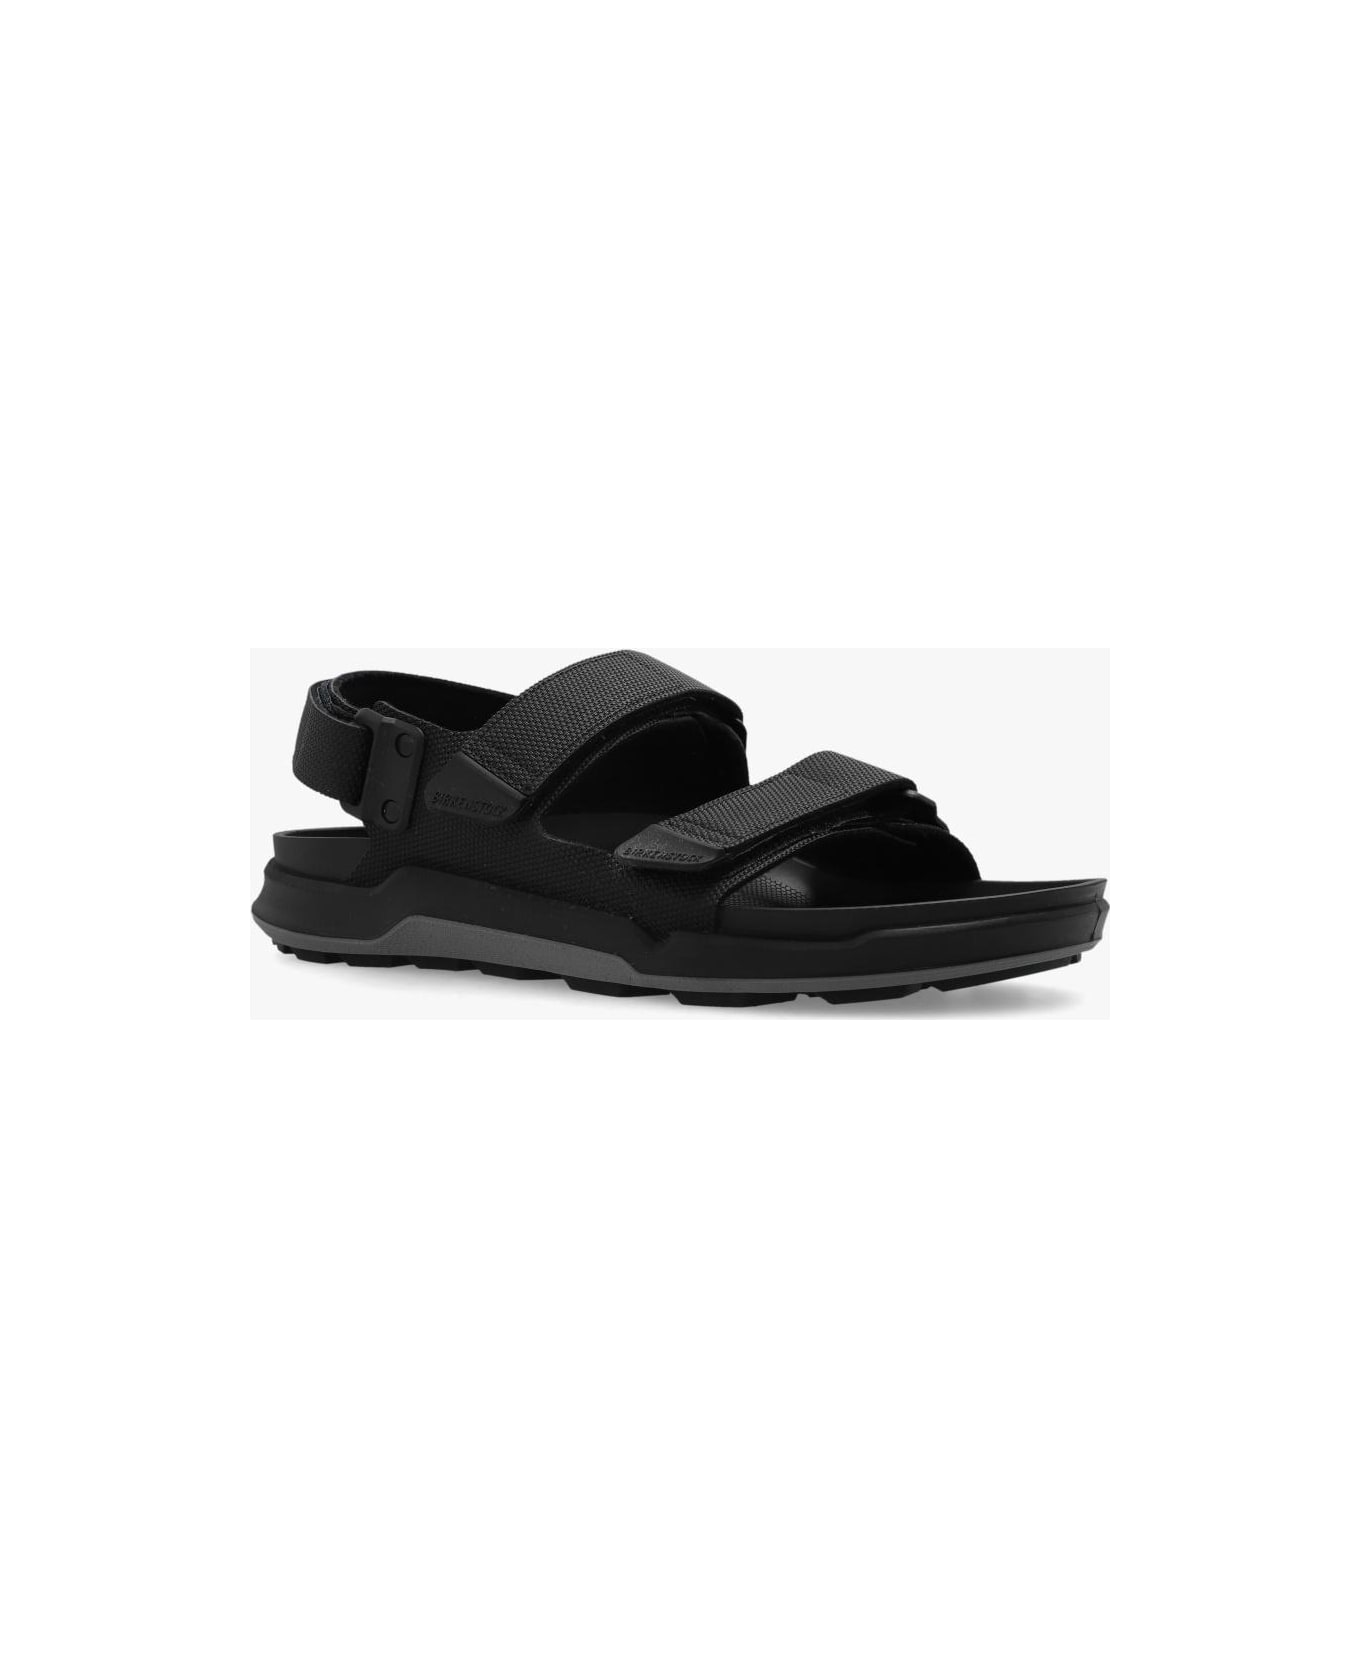 Birkenstock 'tatacoa' Sandals - Black